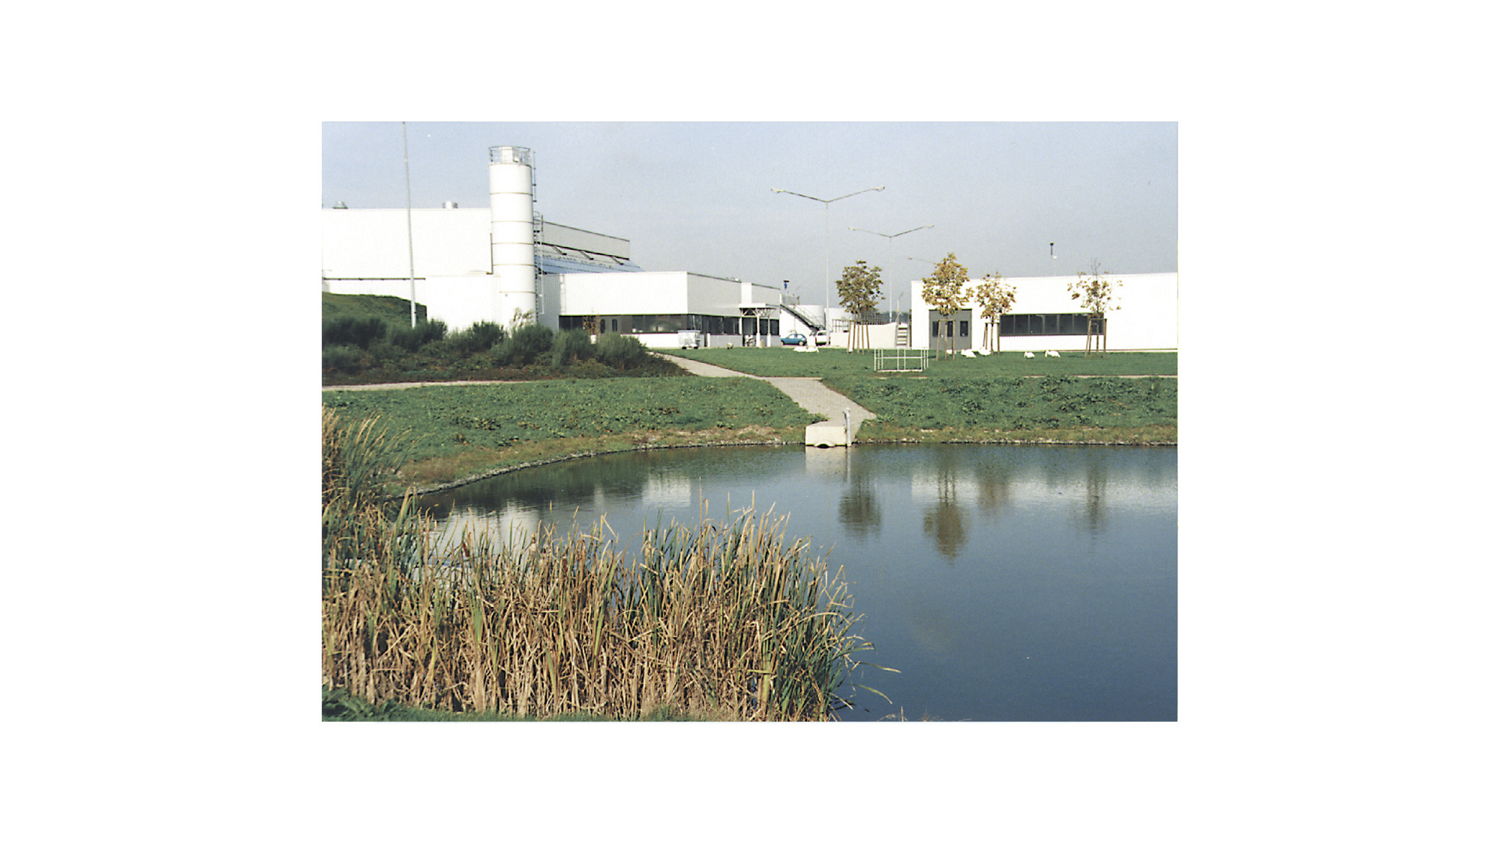 Octubre de 1995: La fábrica busca voluntariamente obtener su certificación ecológica de acuerdo con el estándar de la UE. En 1996 se otorgó el Certificado Ambiental Europeo.